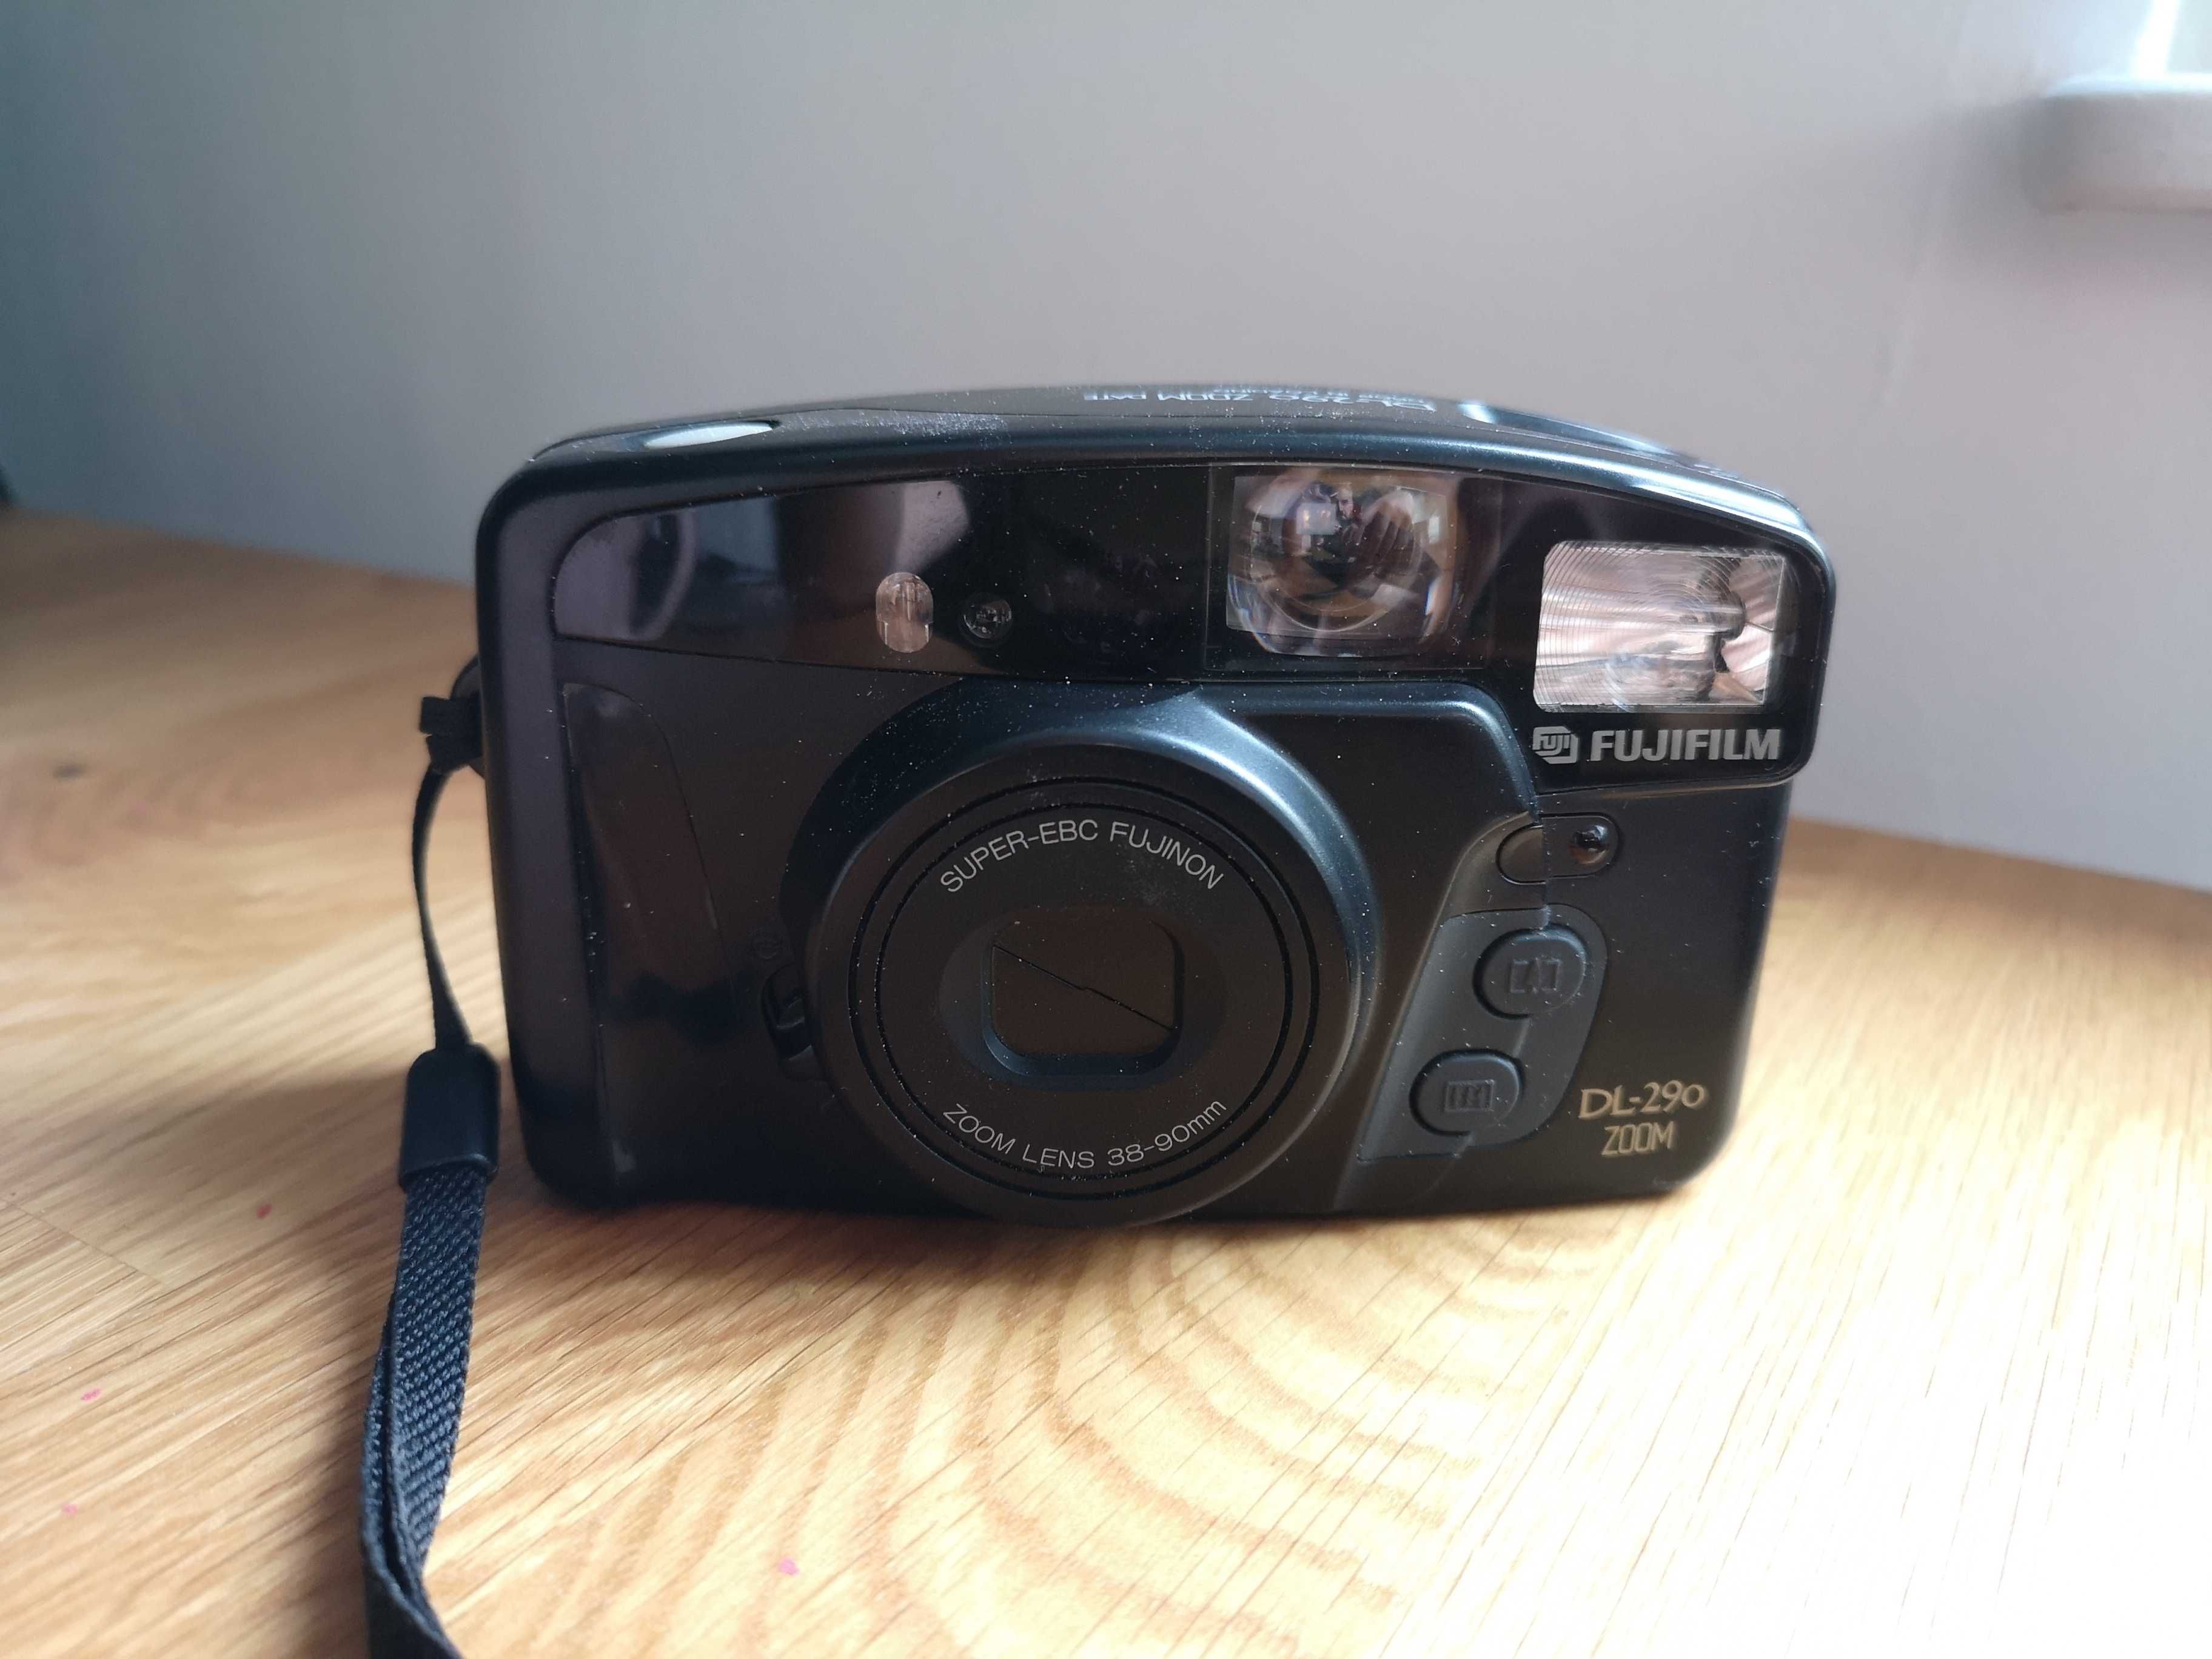 Aparat fotograficzny analogowy Fujifilm DL - 290 zoom